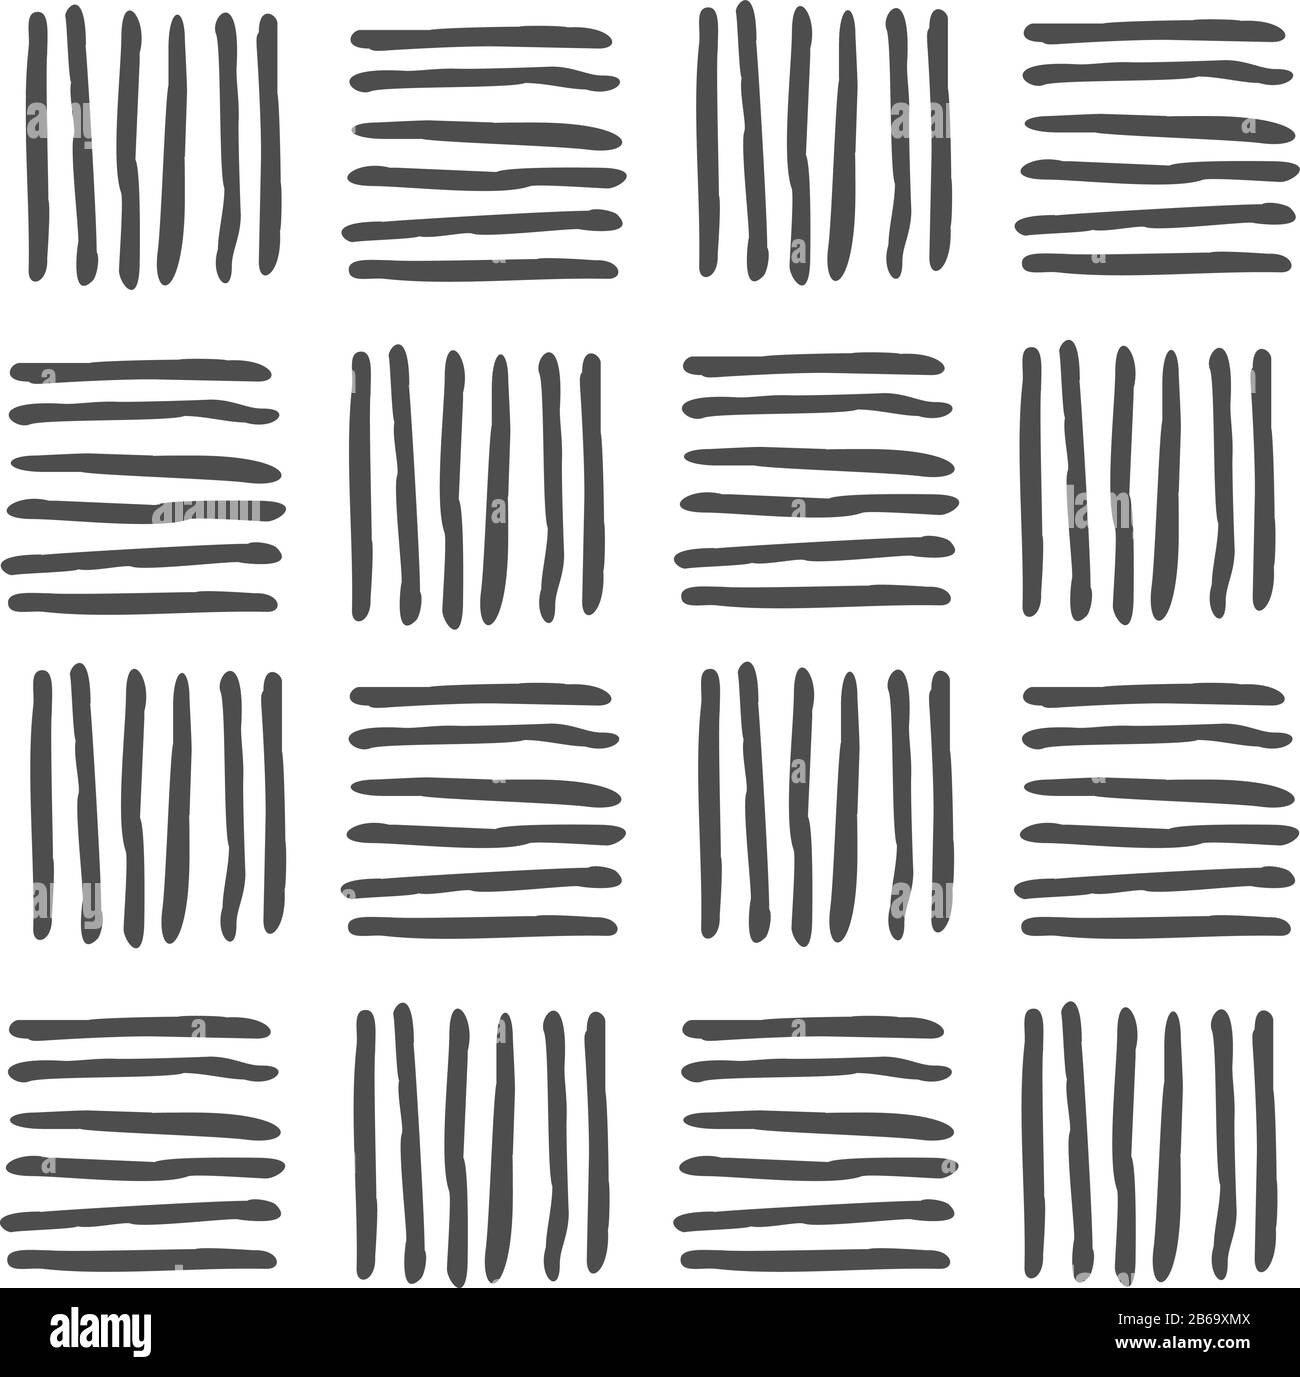 Tracciato geometrico vettoriale bianco e nero continuo di righe orizzontali e verticali disegnate a mano, linee. Per arredamento, tessile, tessuto, moquette, carta da parati, Illustrazione Vettoriale